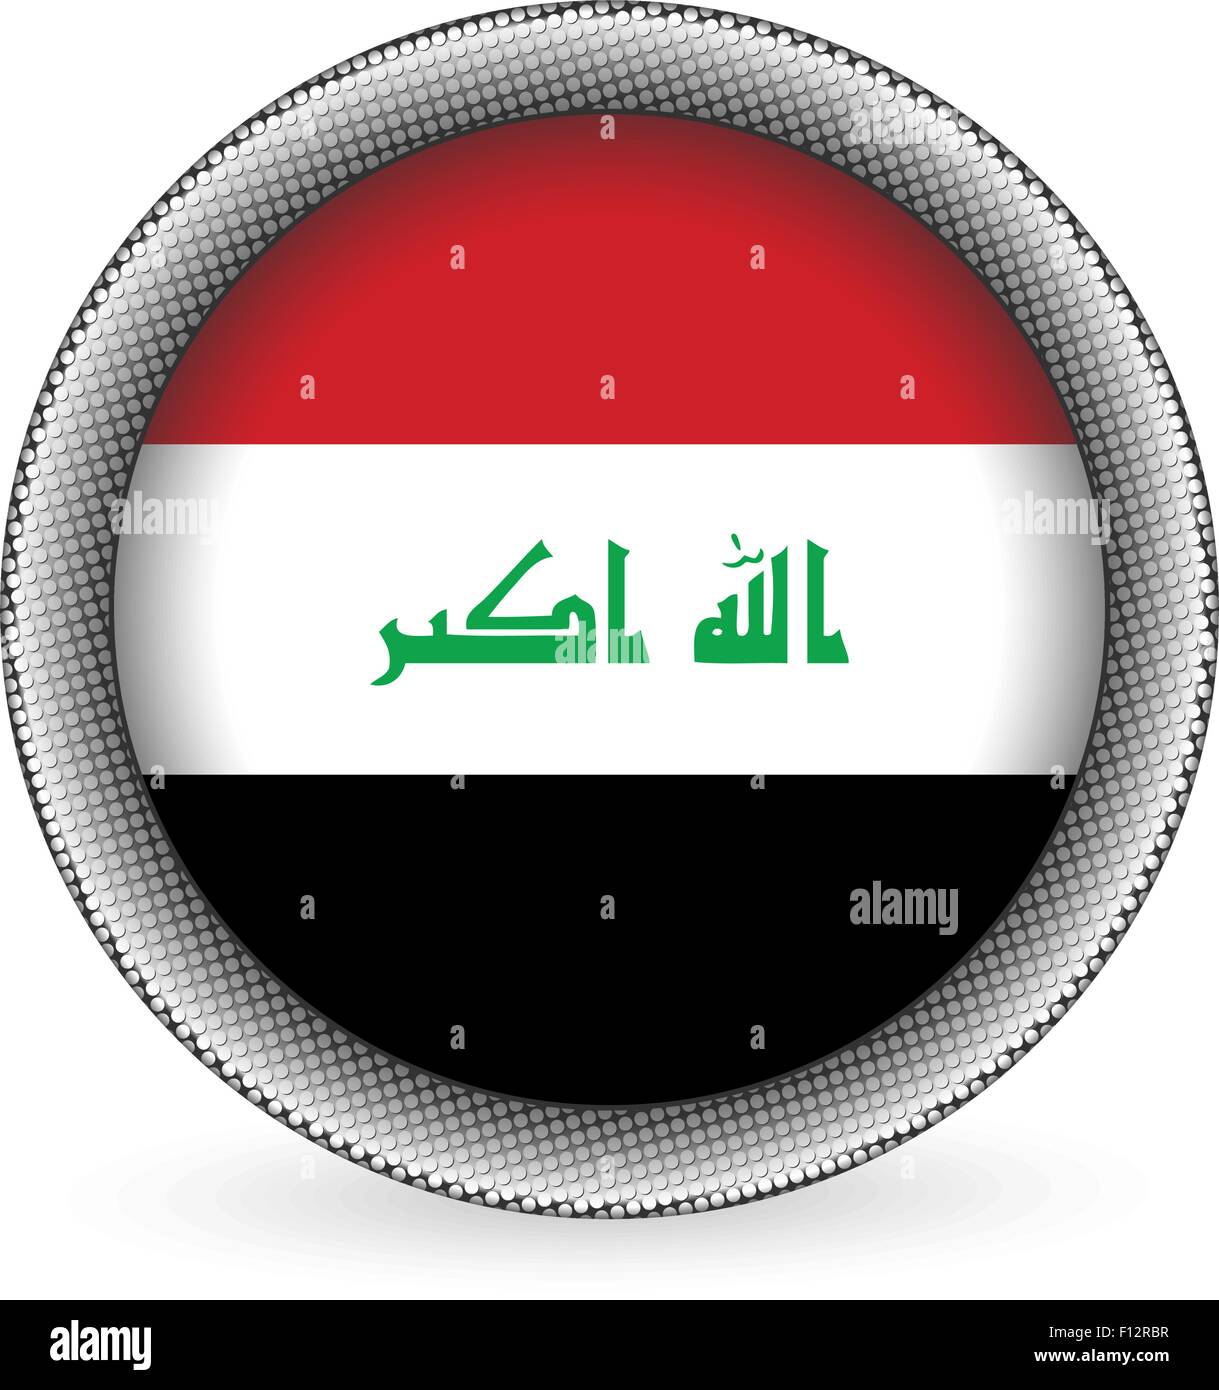 Irak-Flagge-Taste auf einem weißen Hintergrund. Vektor-Illustration. Stock Vektor